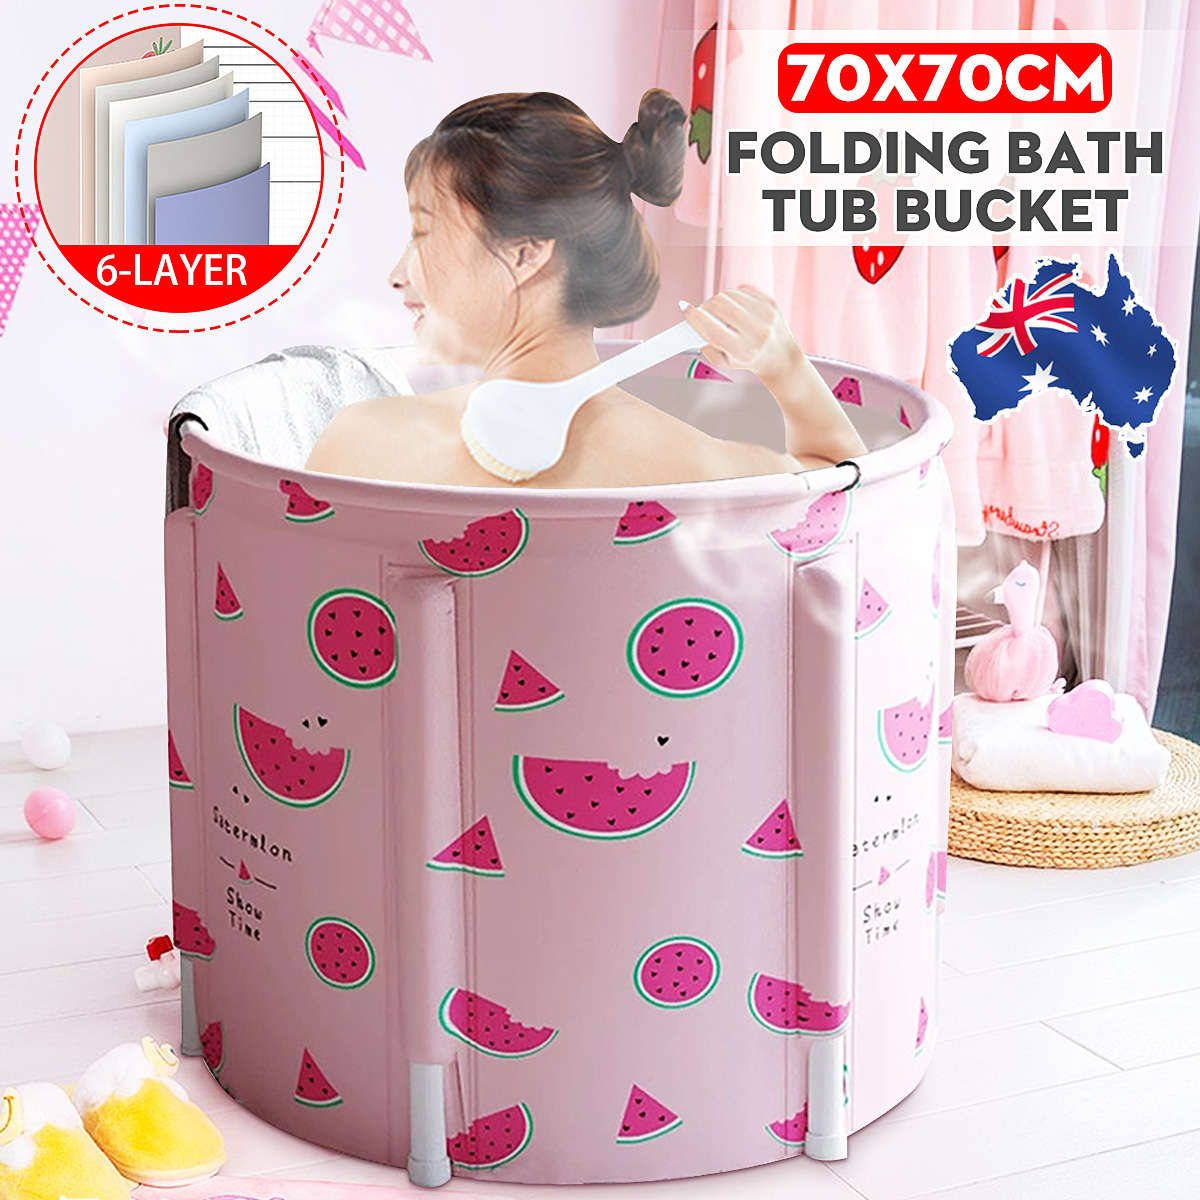 70x70CM Portable PVC Folding Bathtub Water Spa Tub Bath Bucket Outdoor Bath Tub 46